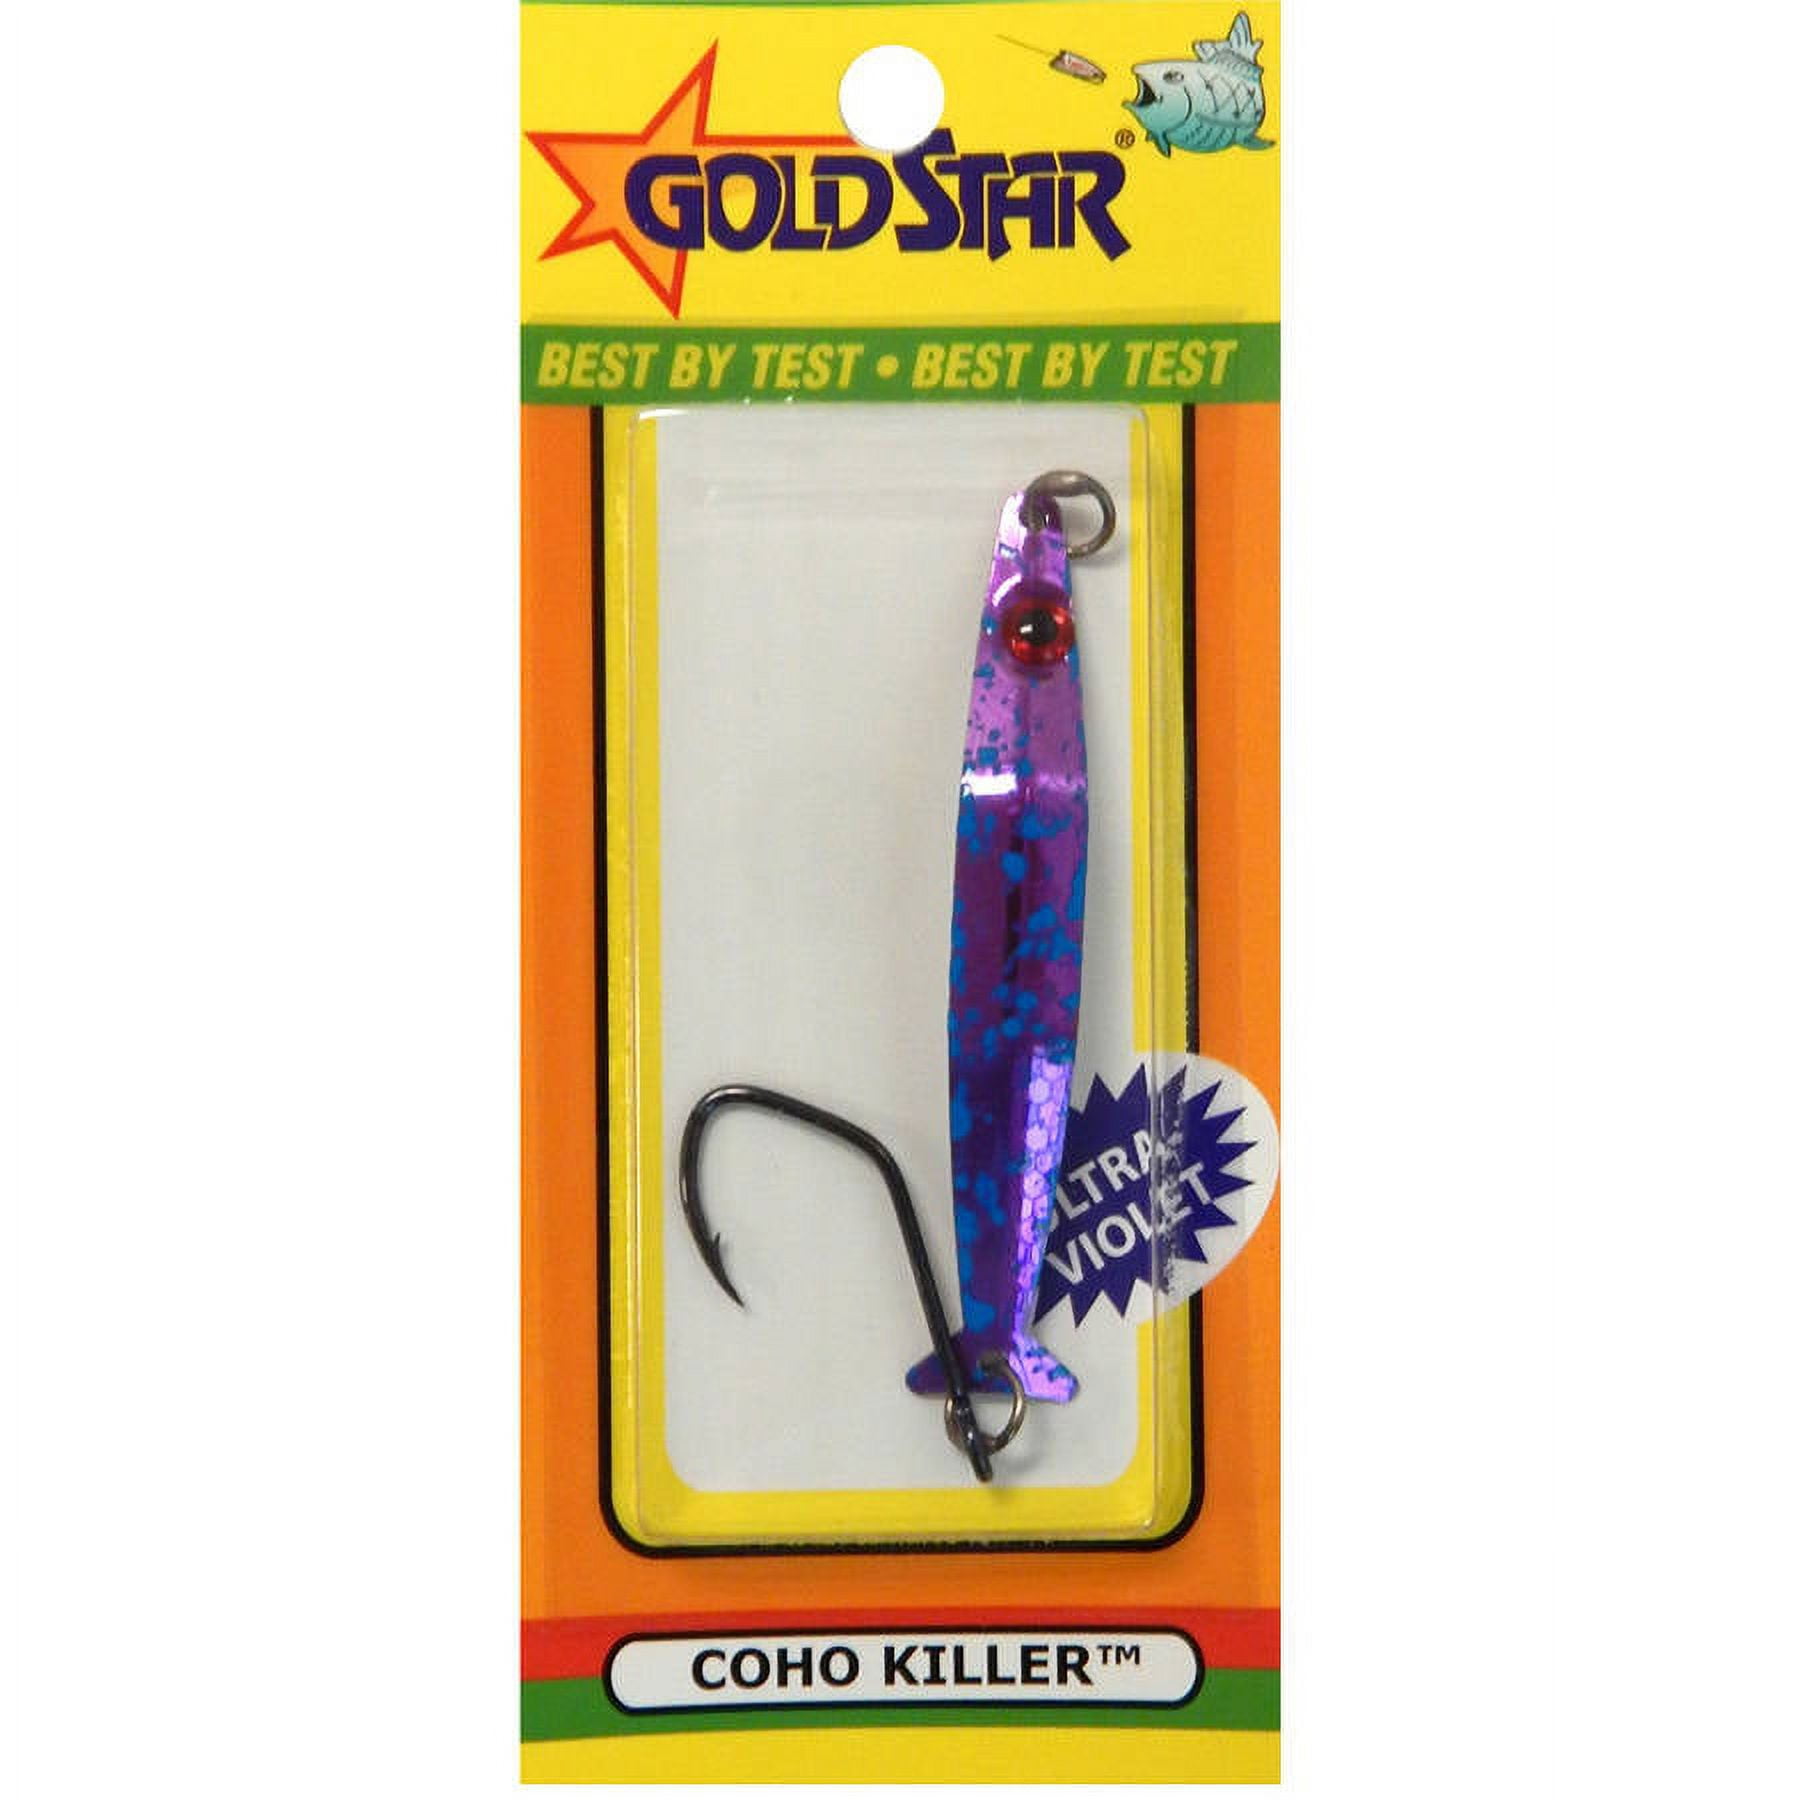 Silver Horde Gold Star Coho Killer Jigging Spoon